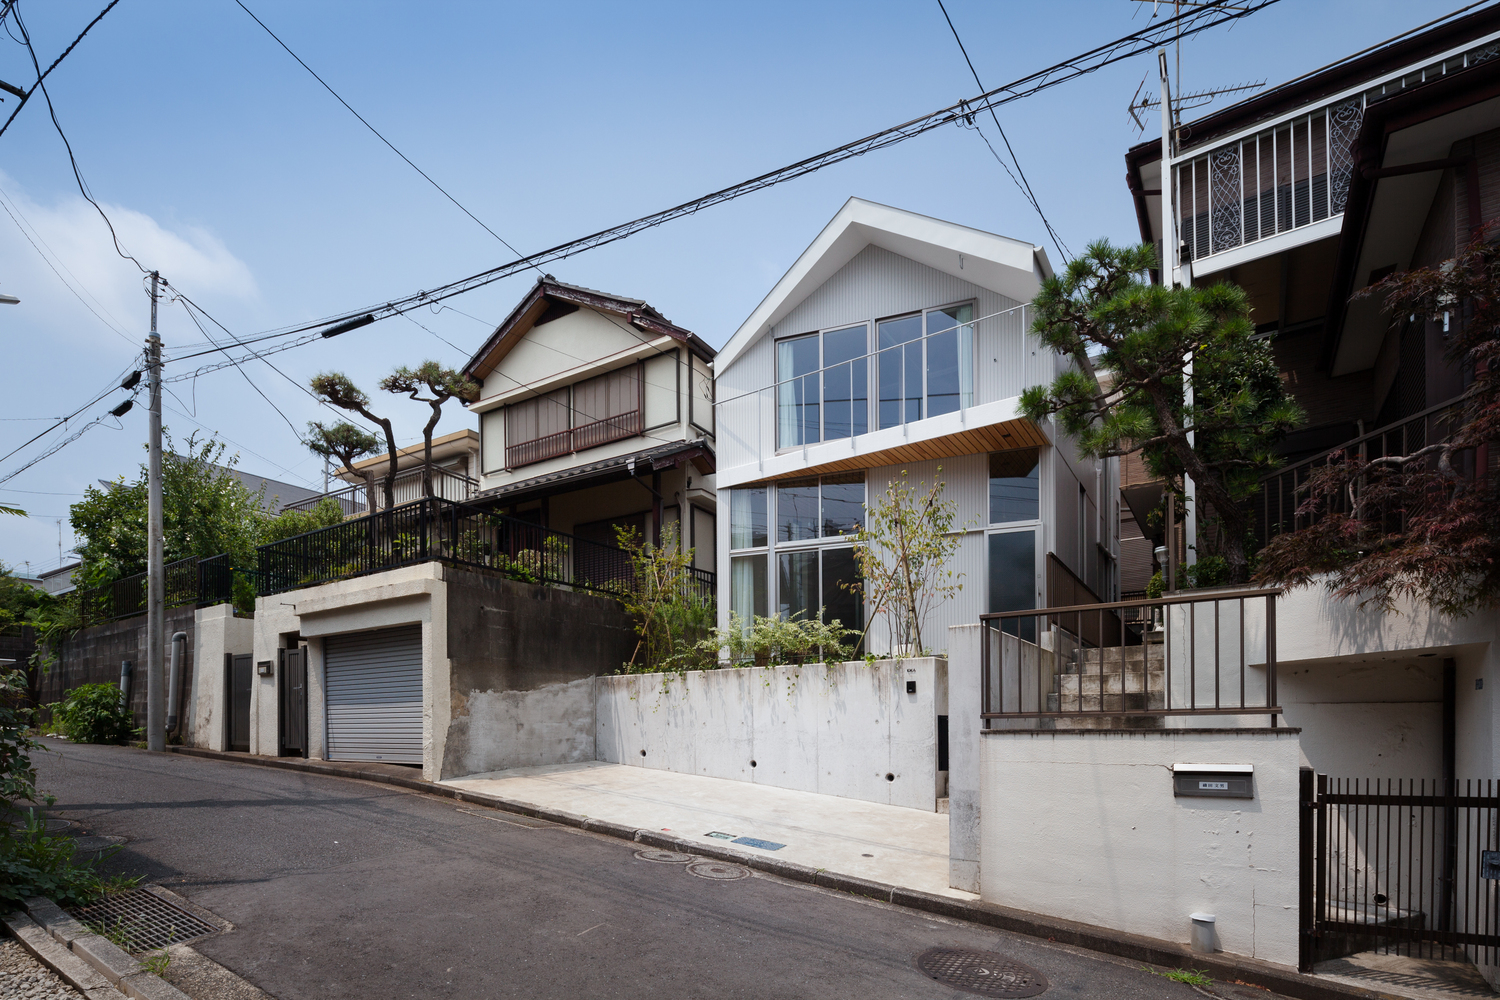 Ngôi nhà nhỏ xinh được xây dựng trên một khu đất diện tích 72m² tại khu dân cư vùng đồi núi, cách Yokohama khoảng 10 phút đi tàu.